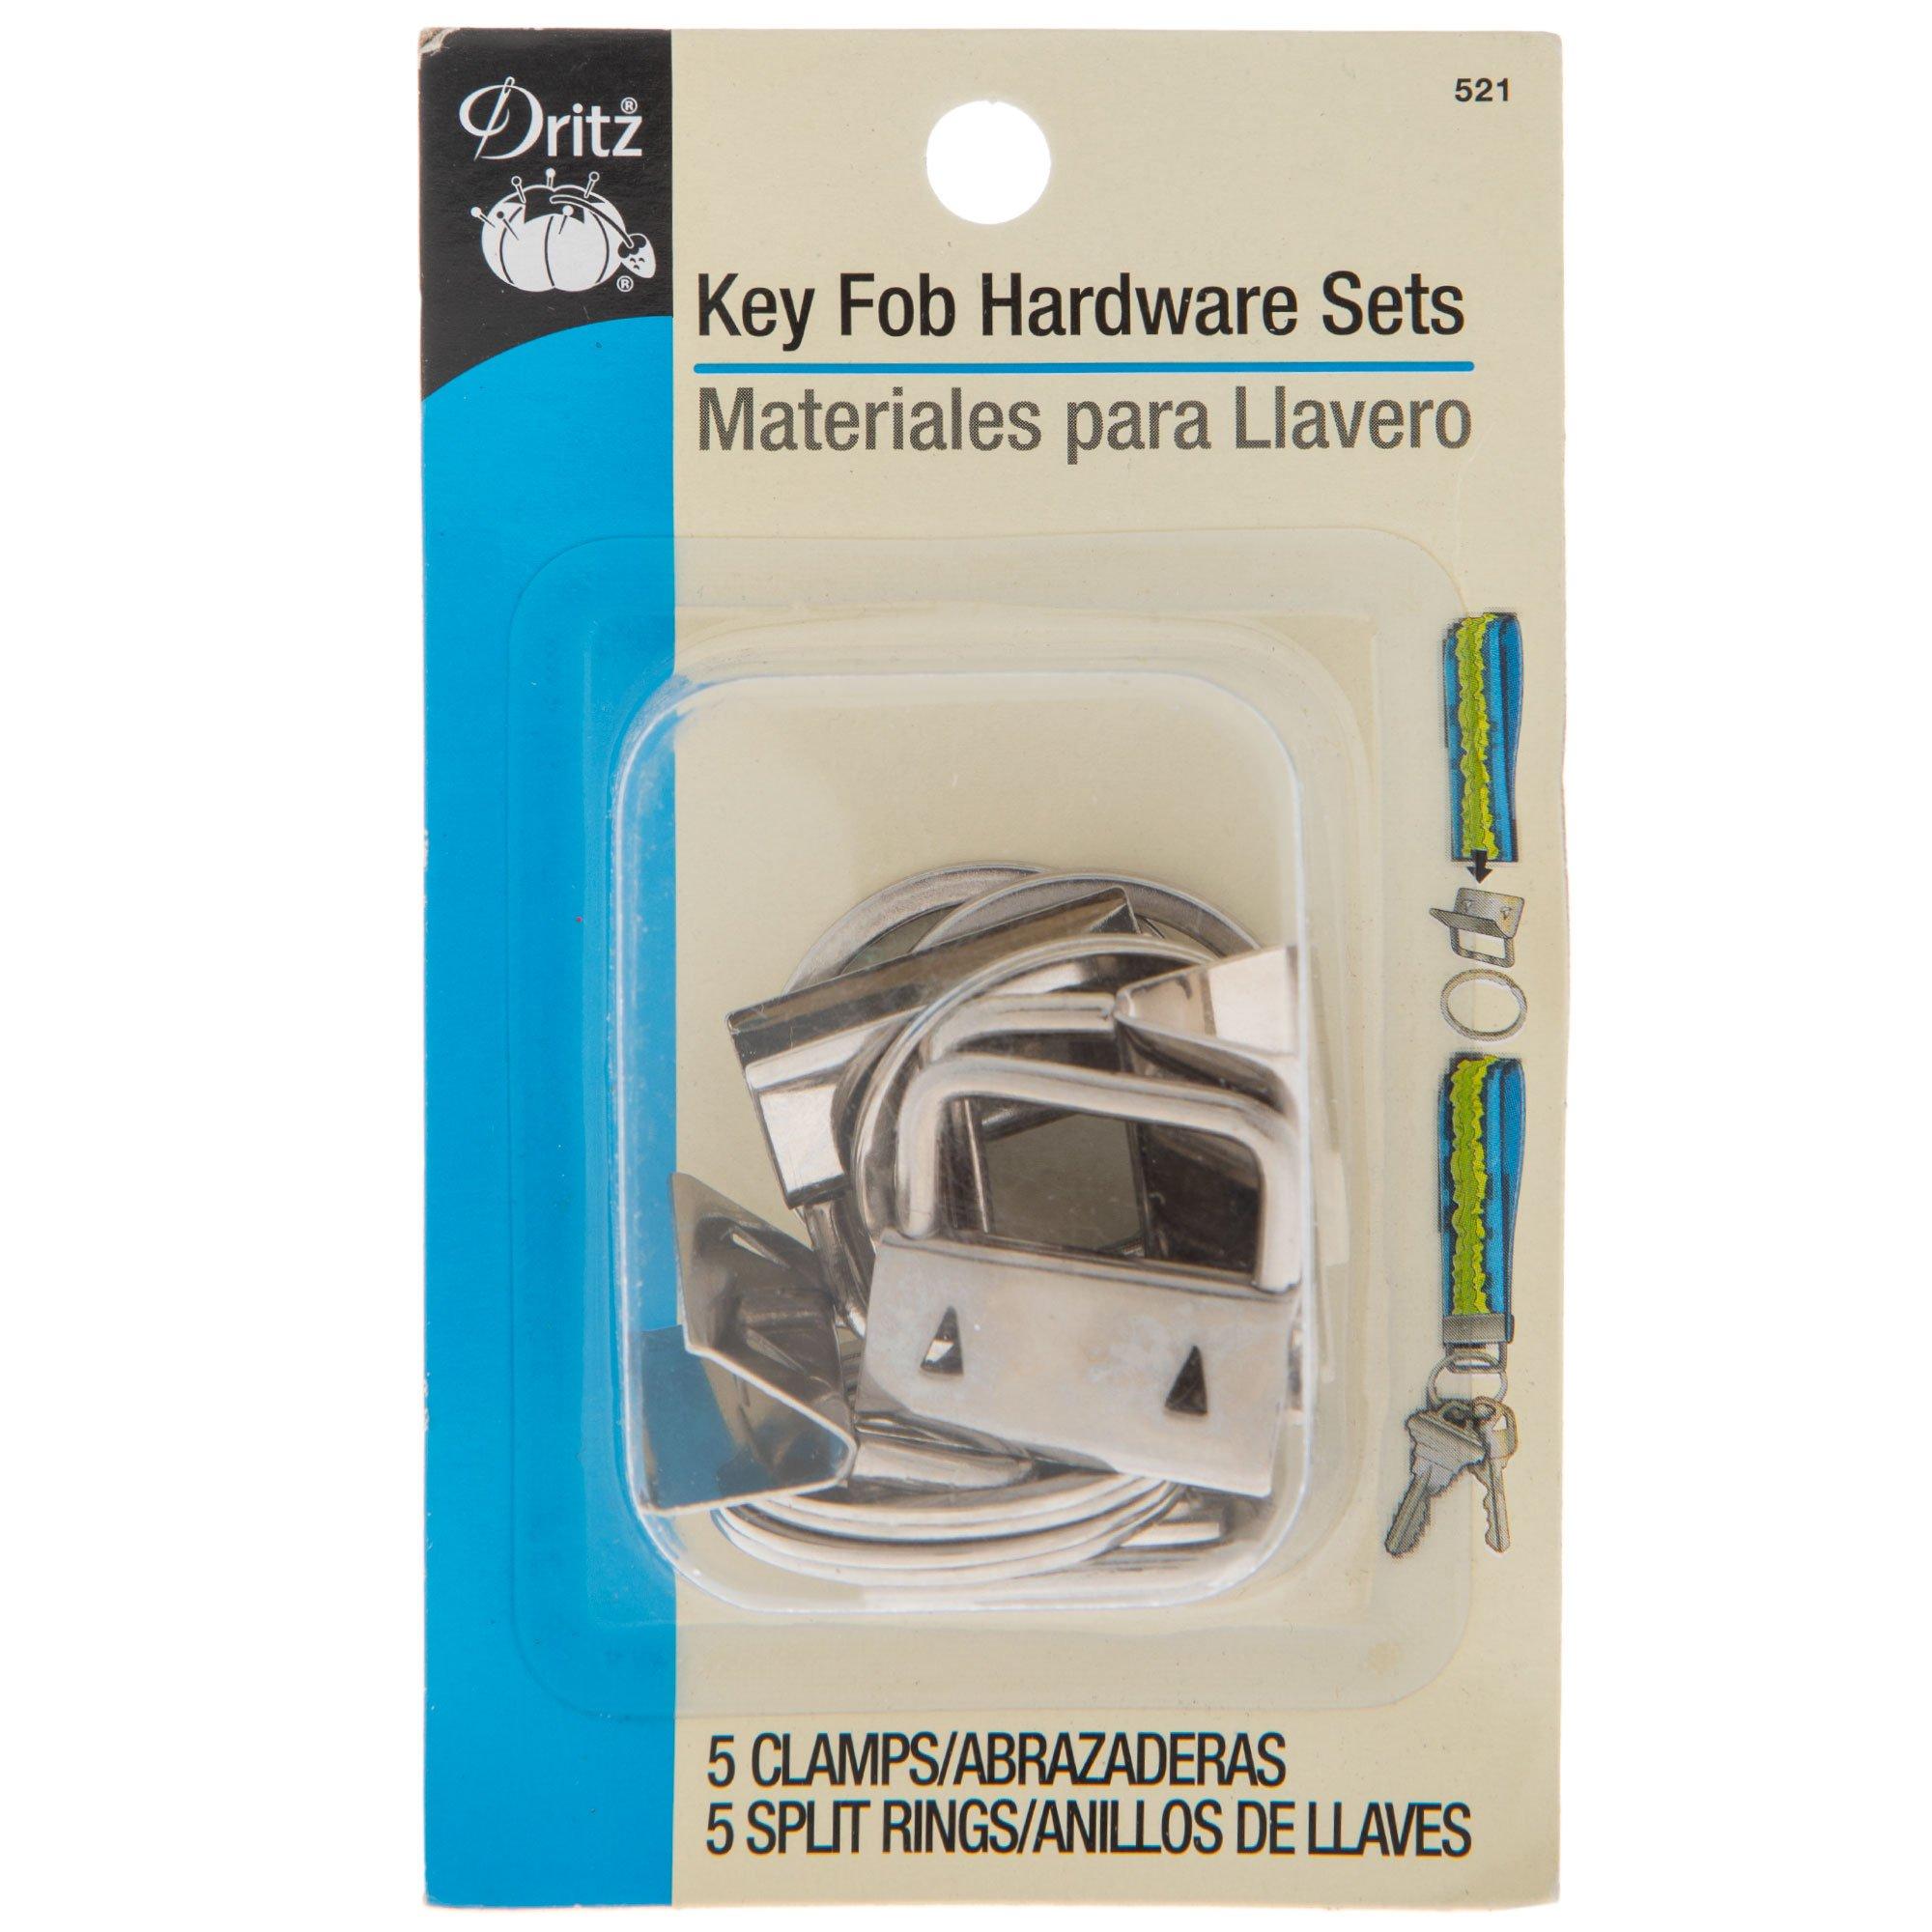  80 Piece Key Fob Hardware Keychain Hardware and 1 Key